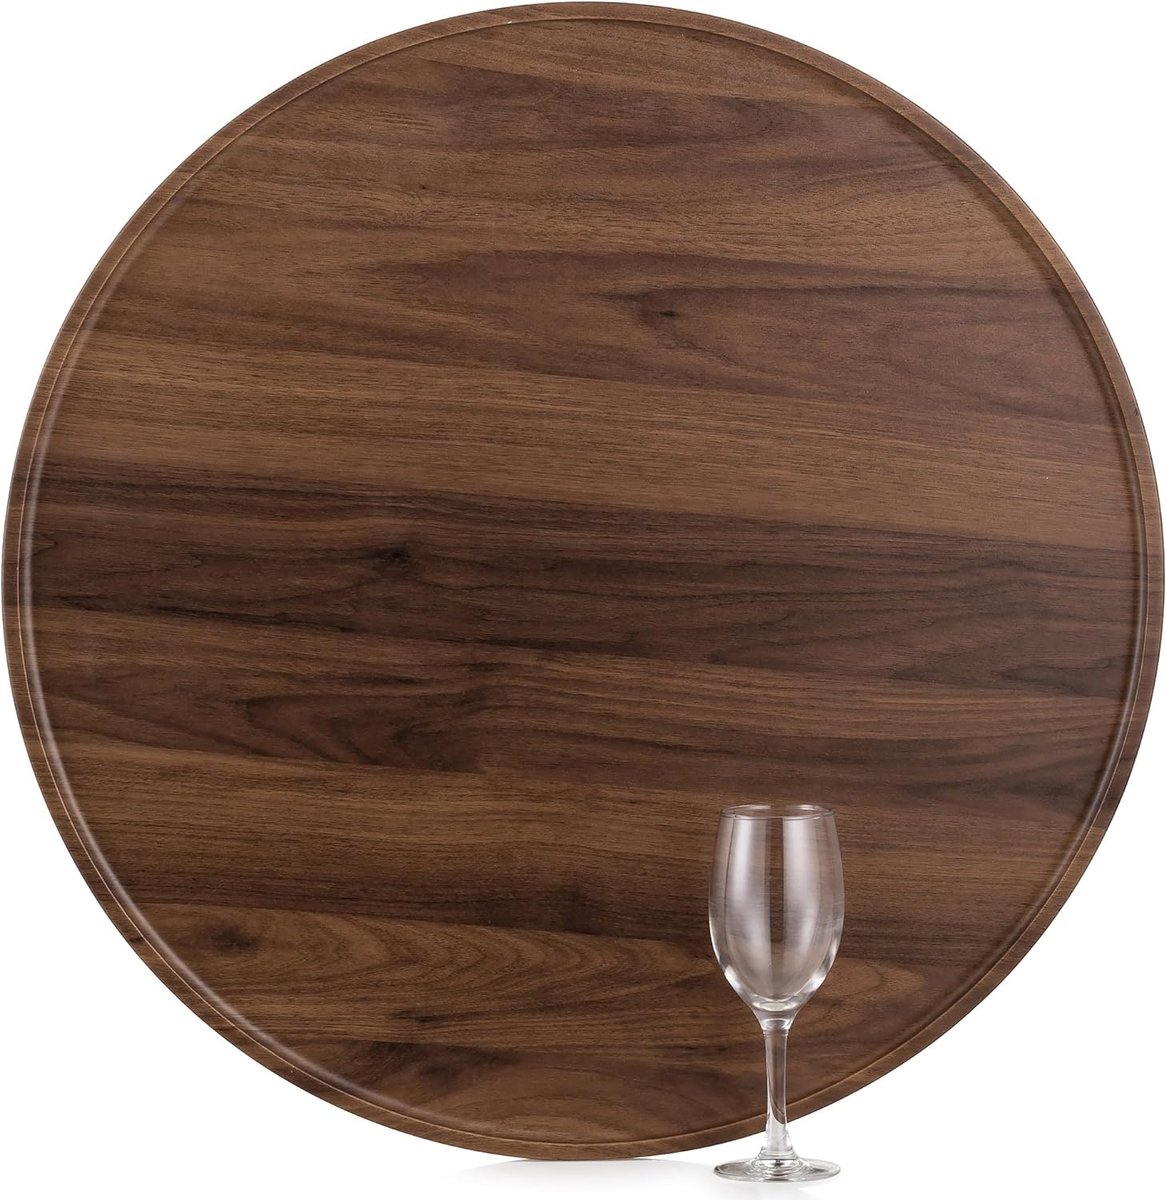 Dienblad dienblad groot rond: rustiek groot walnoot houten dienblad notenhout dienbladen voor koffie keuken voetenbank, 56 cm